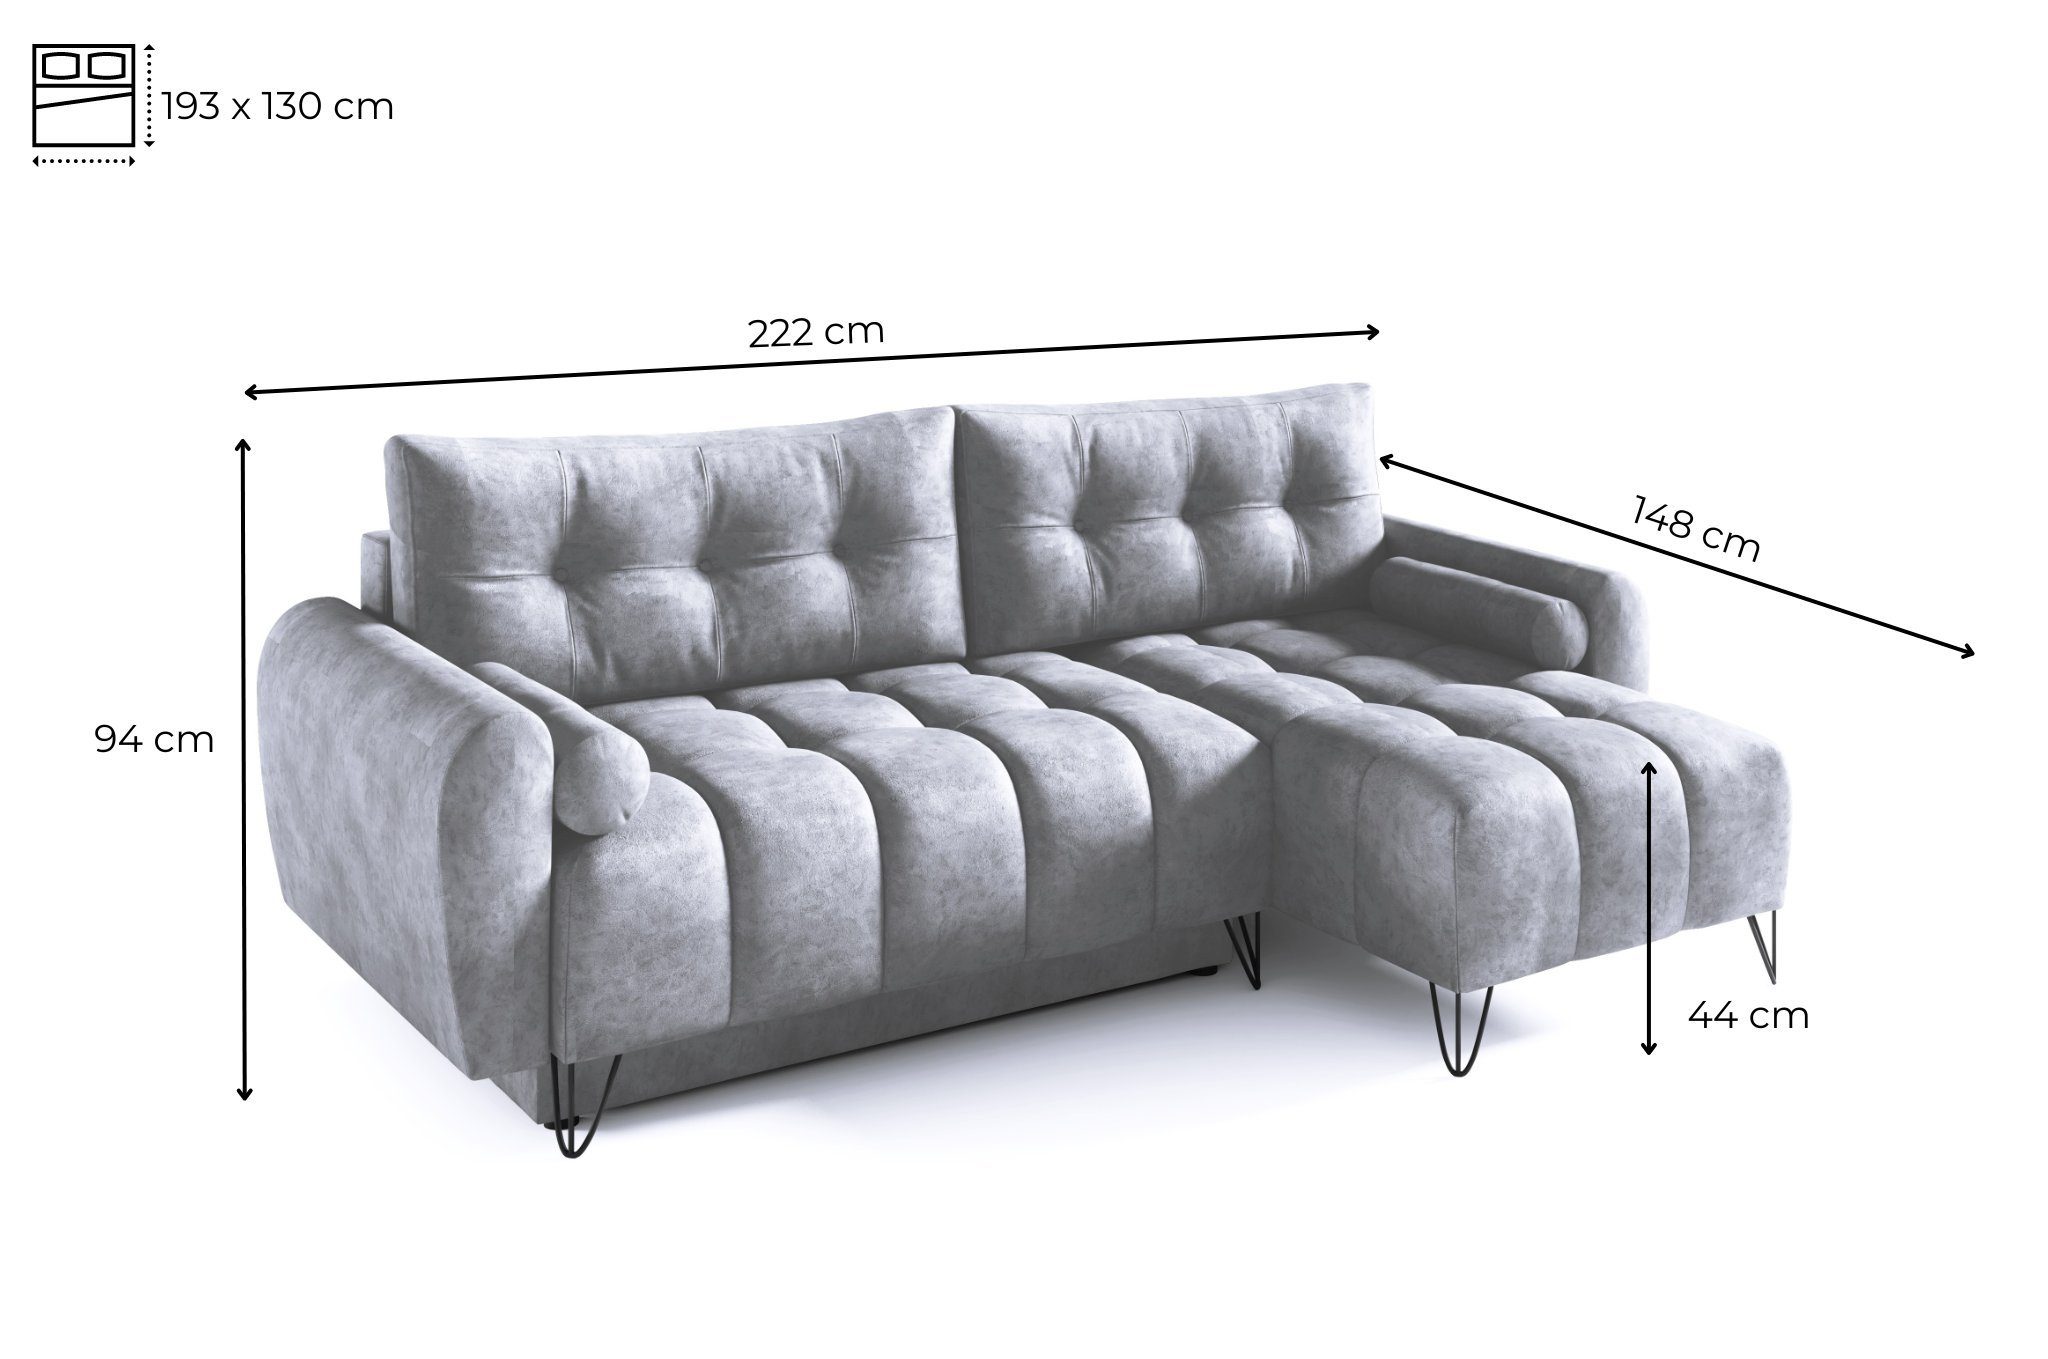 Schlaffunktion mit Ecke Bettkasten Elegante 222x148x94 MOEBLO L-förmiges Sofagarnitu Schlaffunktion und Mini, Couch OHIO cm, Ecksofa (BxHxT): - Bettzeugablage Wohnzimmergarnitur mit